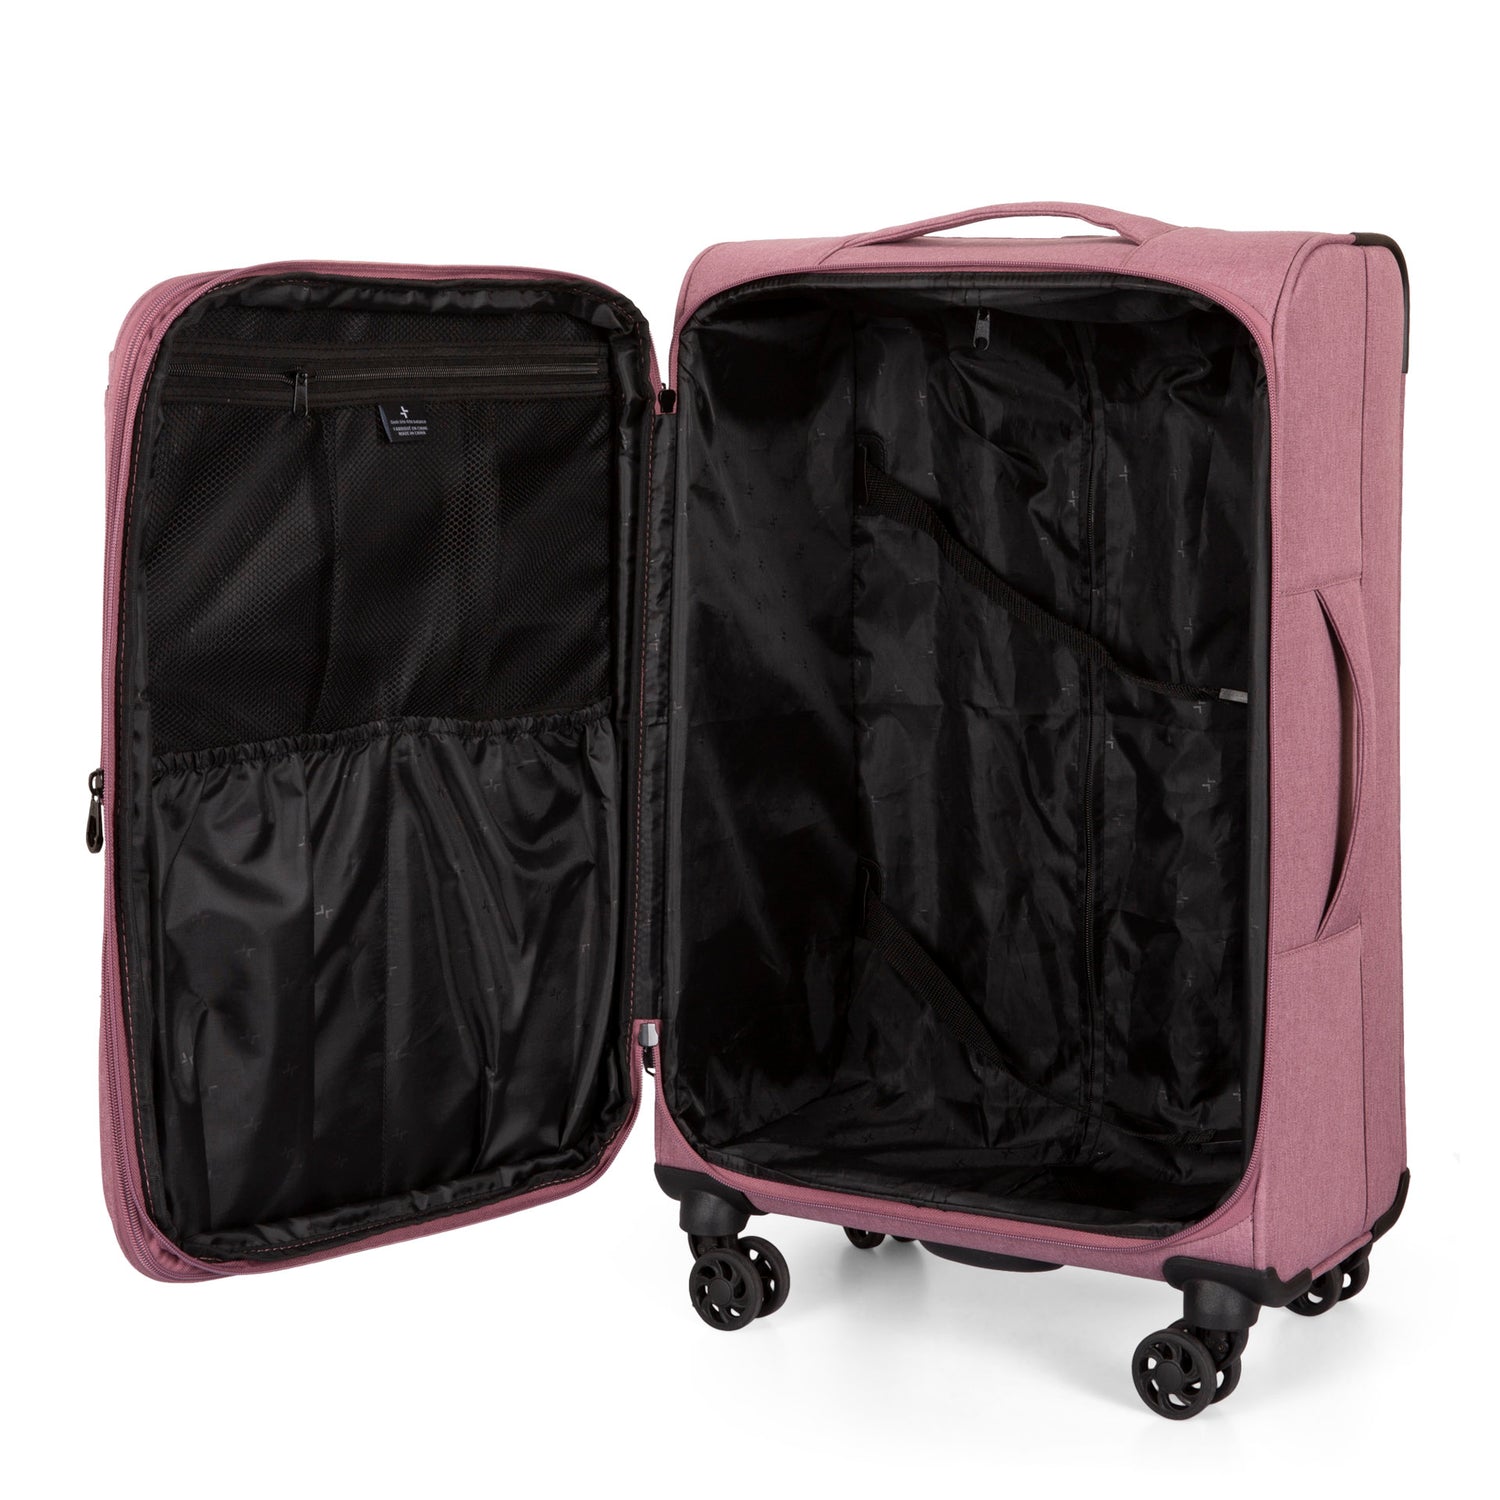 Valise souple ou valise rigide, laquelle choisir? - Blogue Bentley